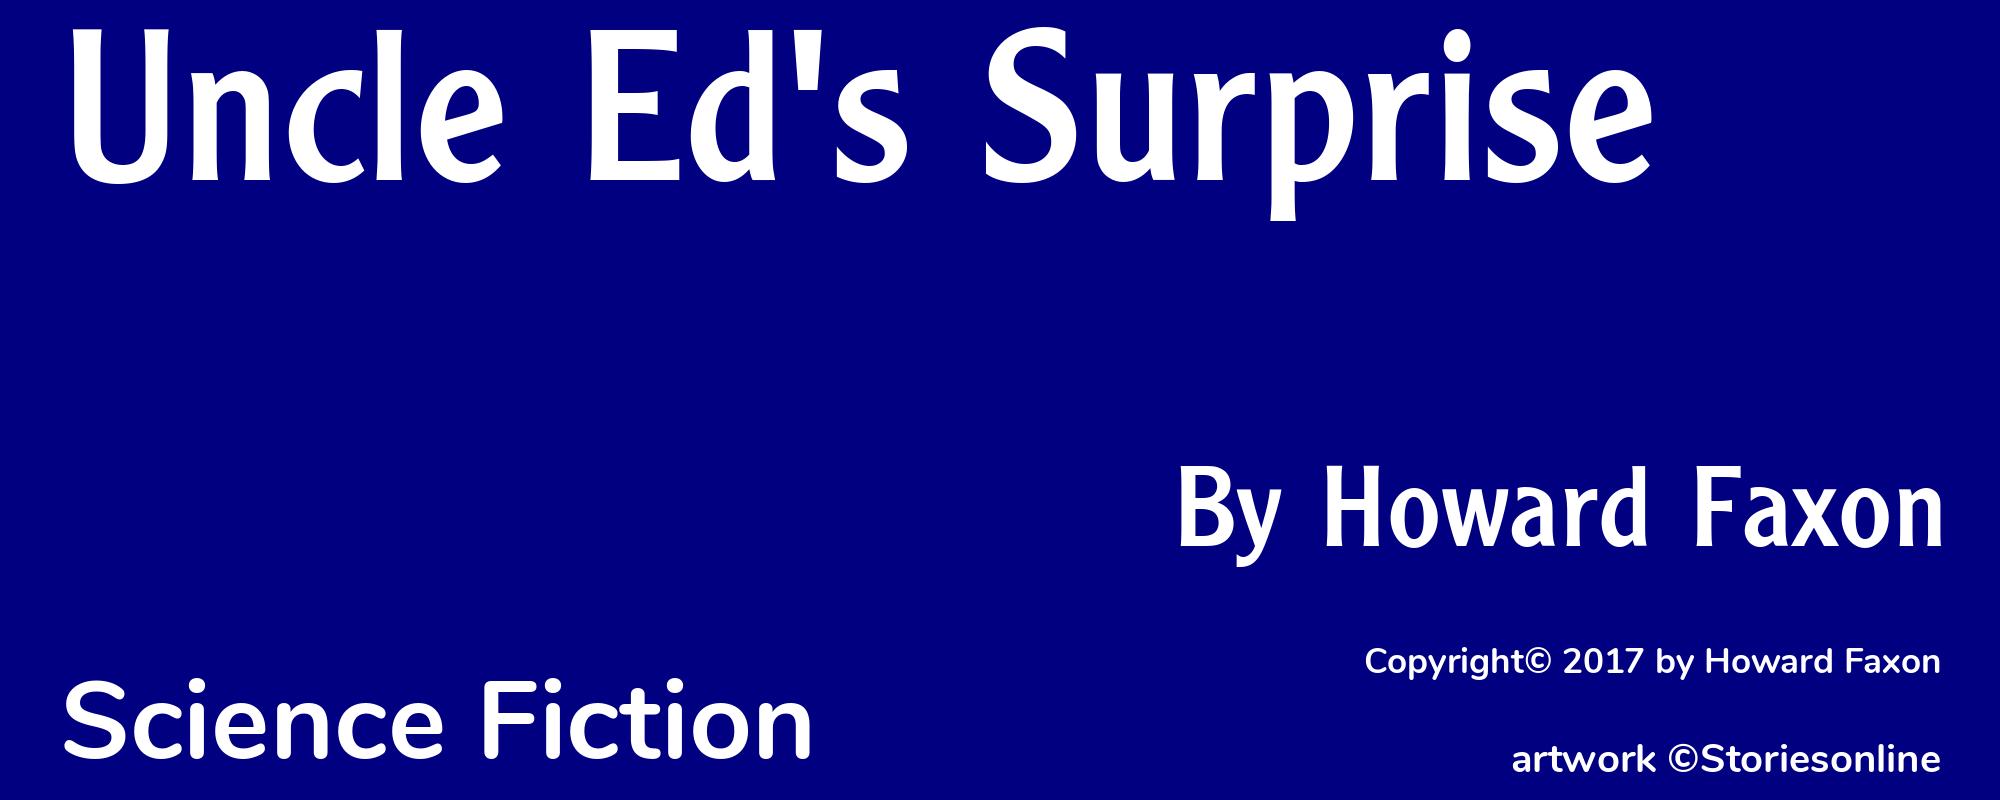 Uncle Ed's Surprise - Cover